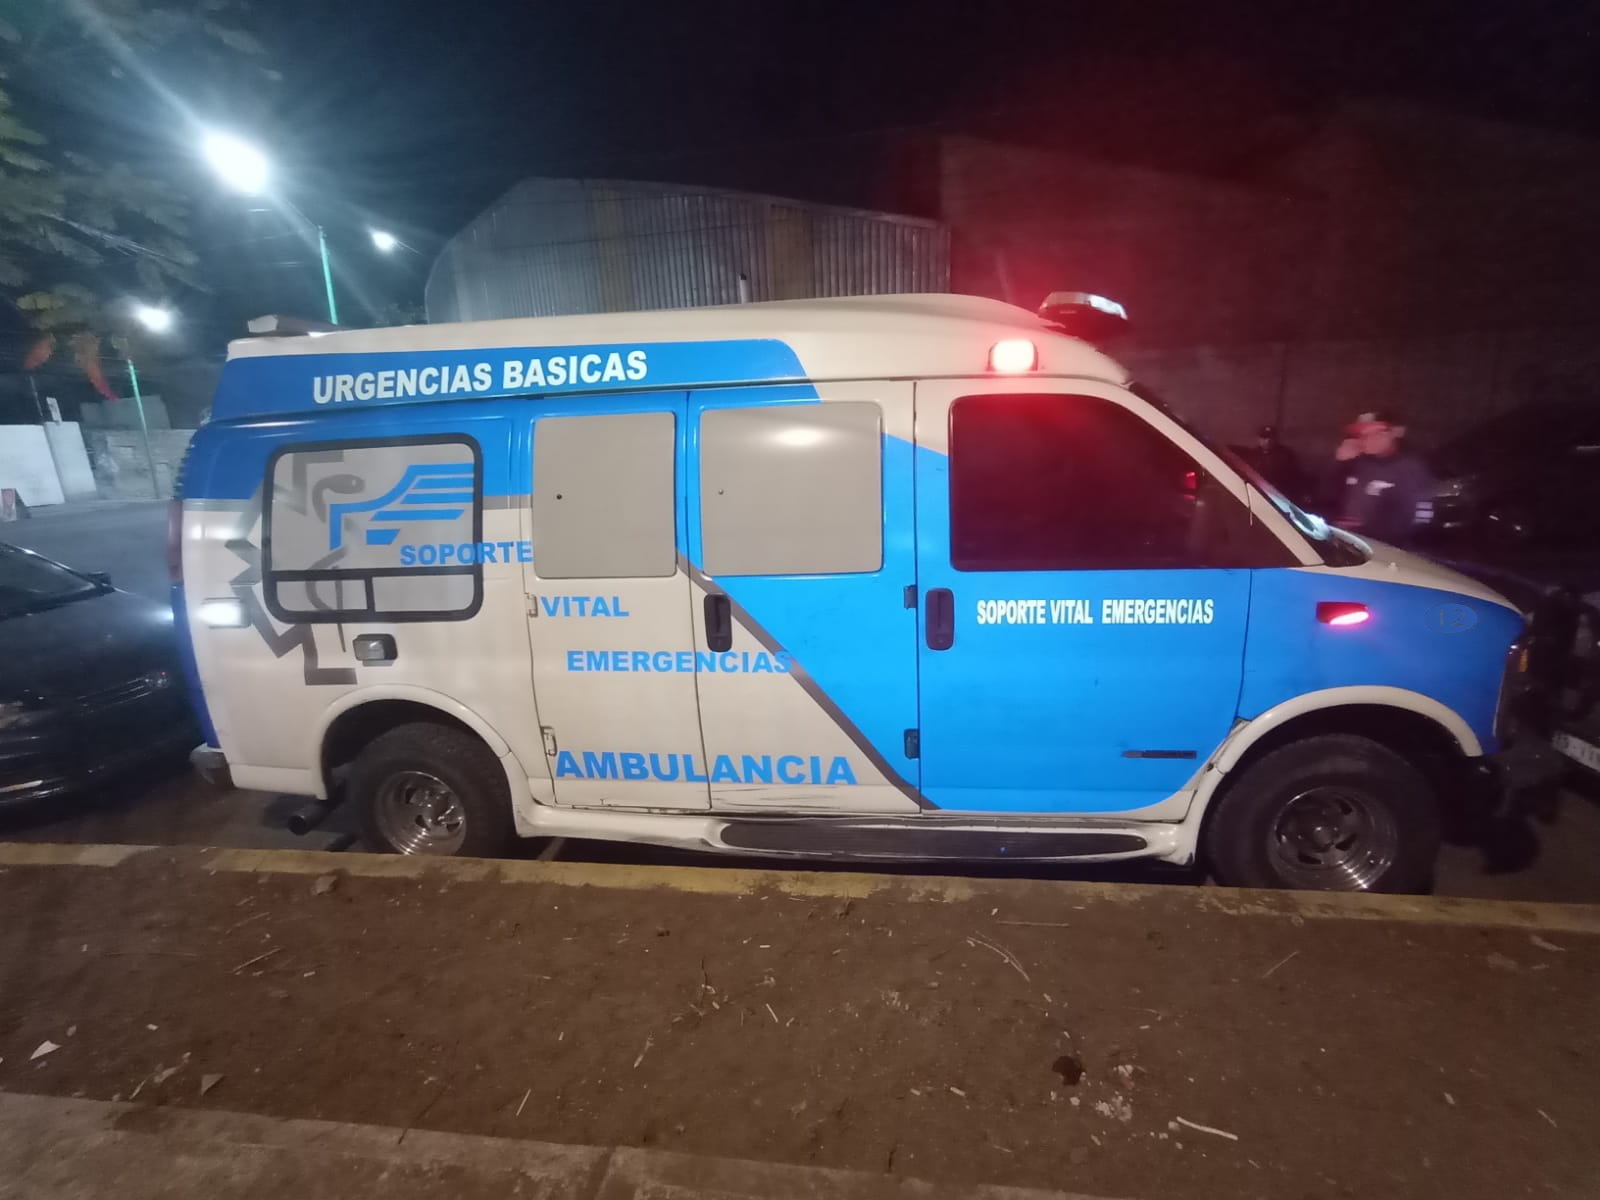 Soporte Vital Emergencias CDMX | Ambulancias 24/7 en la CDMX : Servicio de ambulancia en la Ciudad de México | Servicios de Ambulancias las 24 horas los 7 dÃ­as de la semana, en la CDMX : https://www.ambulancias24-7.com/p/Servicios/